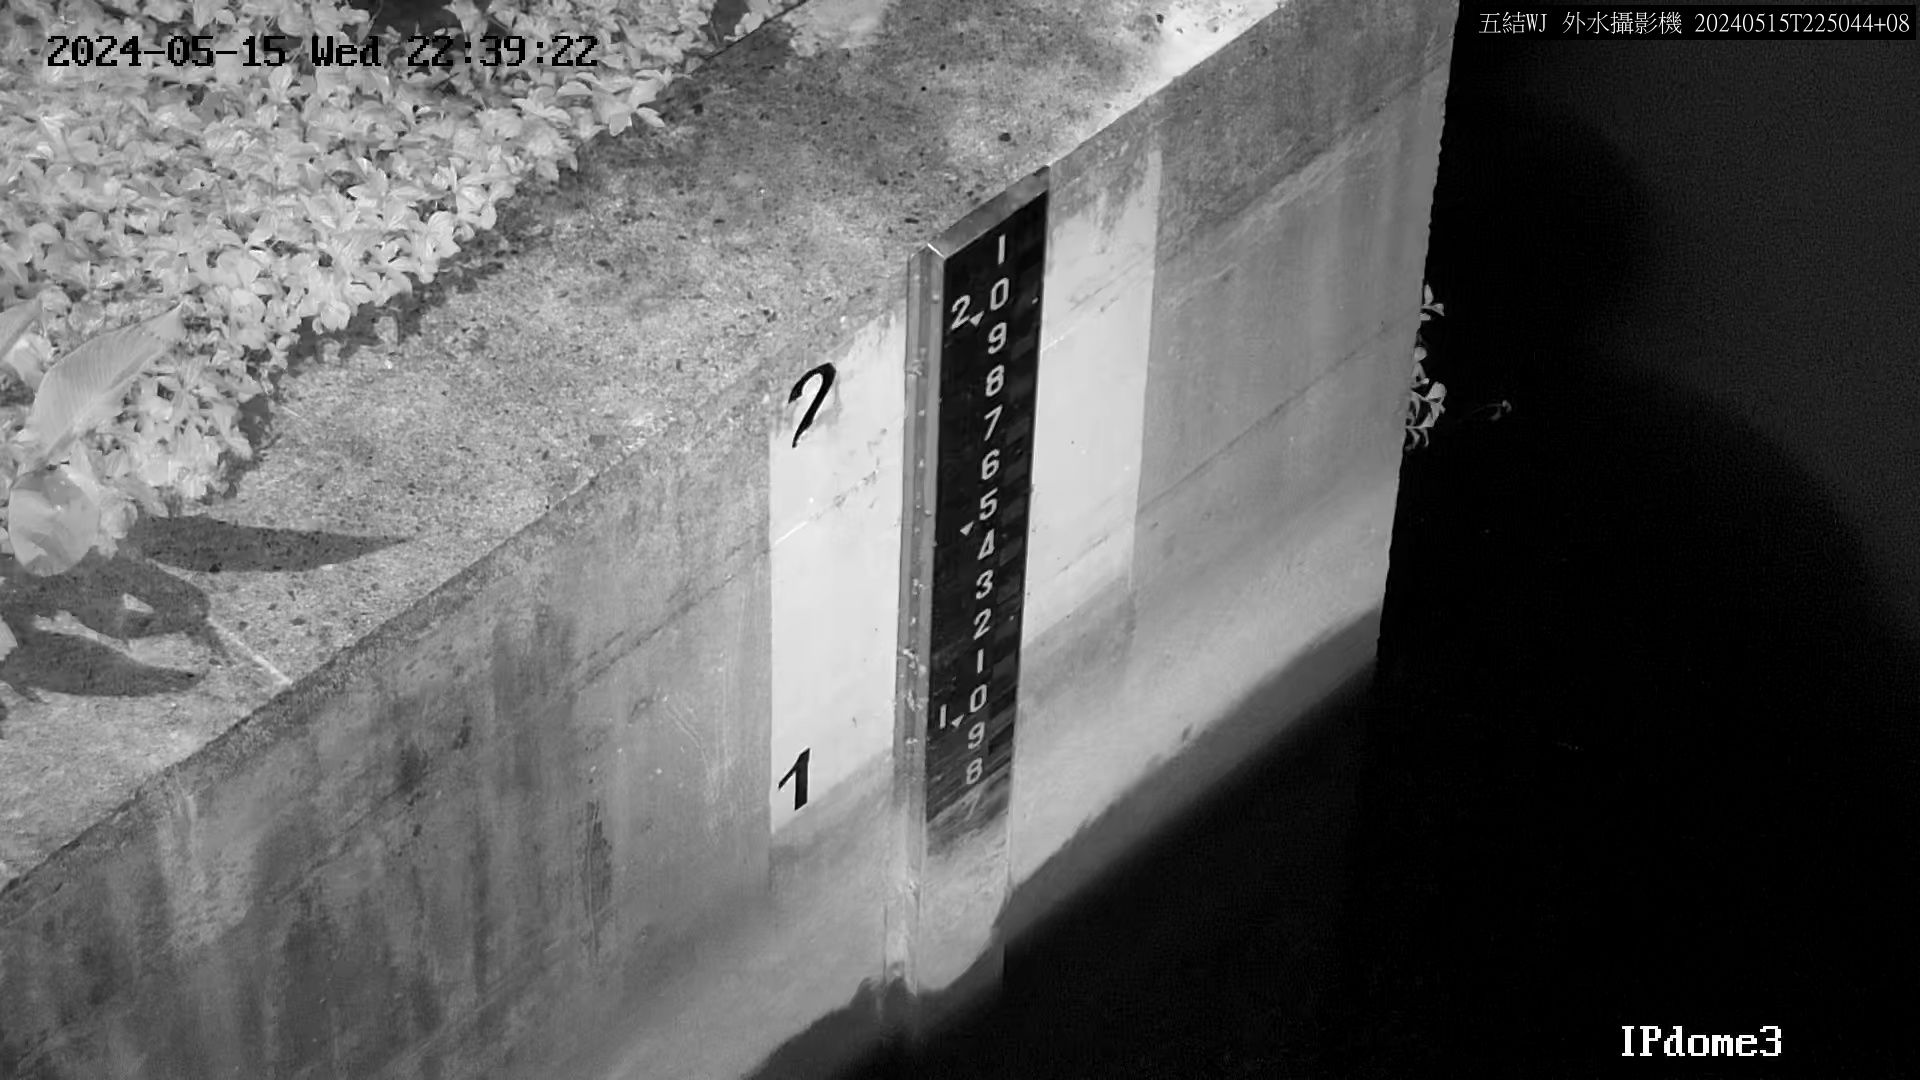 一河局 五結副閘排水防潮閘門外水位 氣溫25.5度